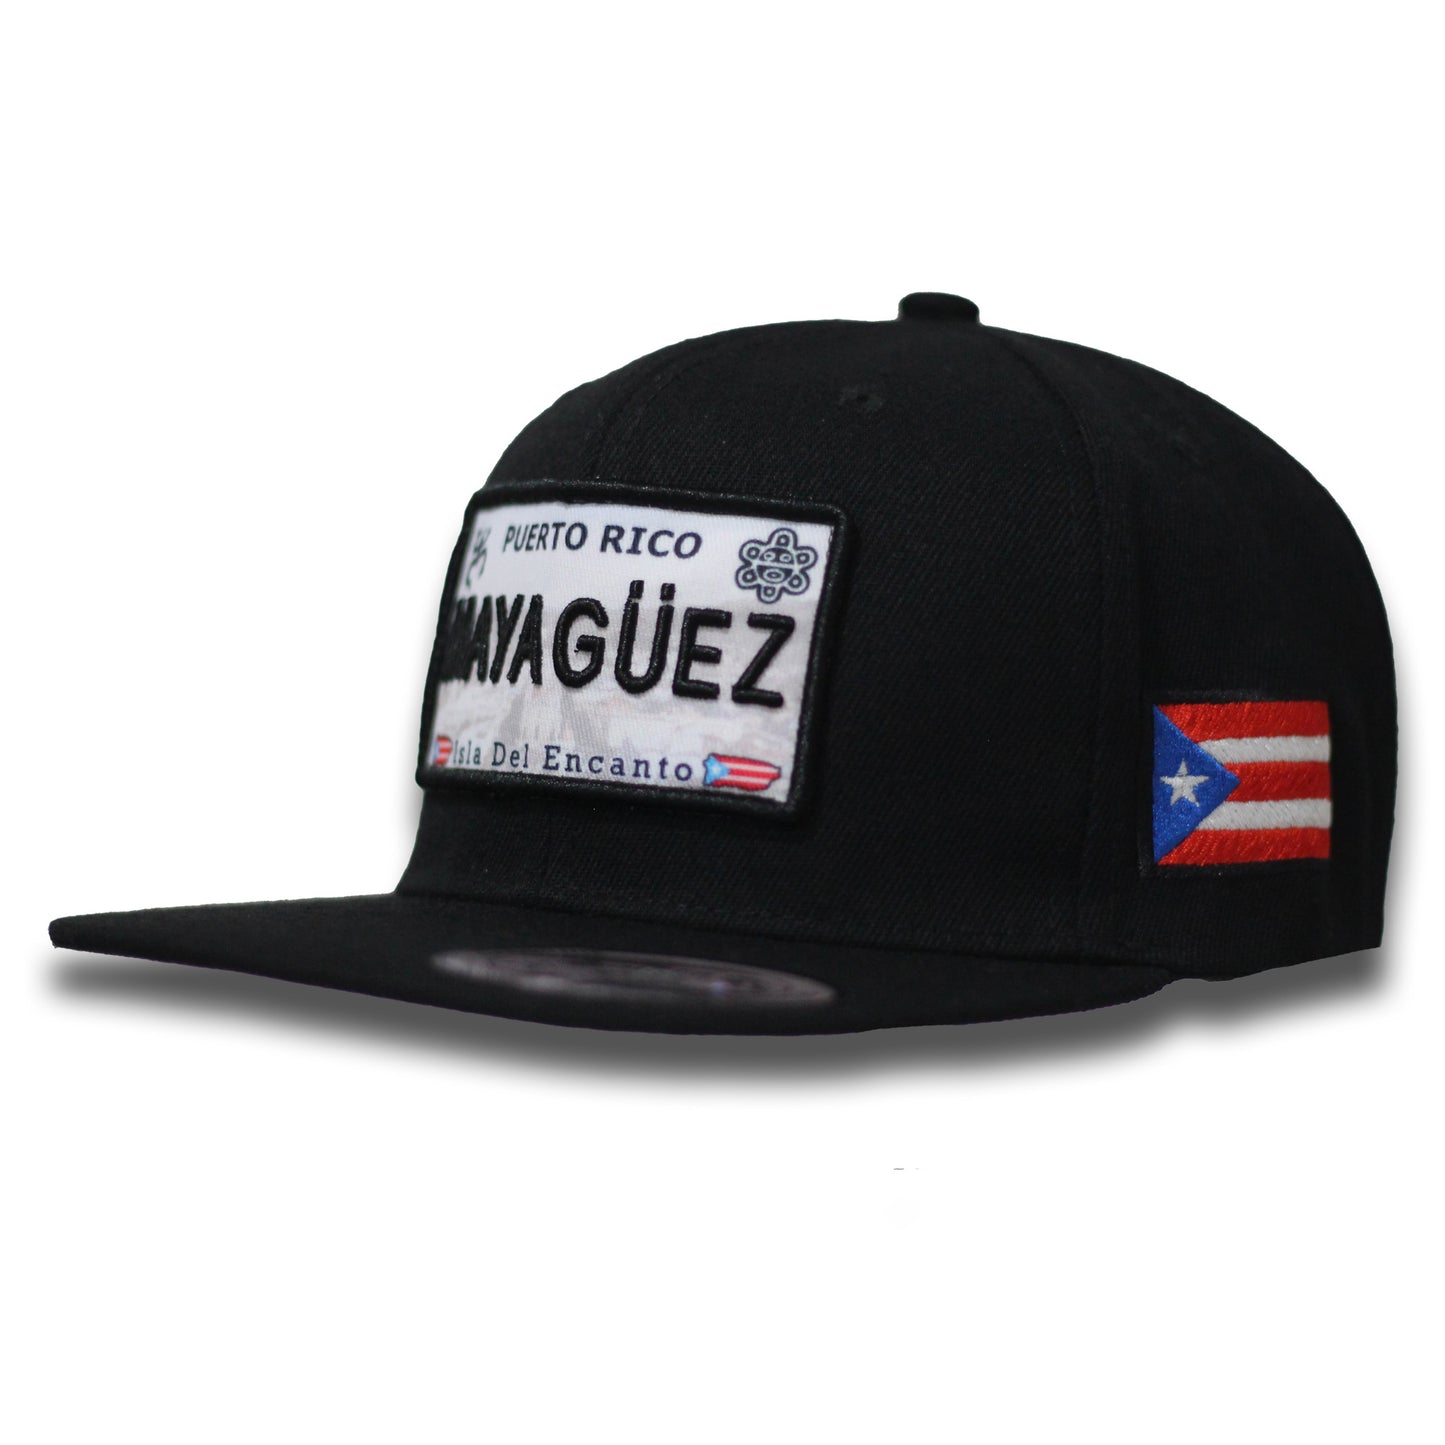 Mayagüez Hat